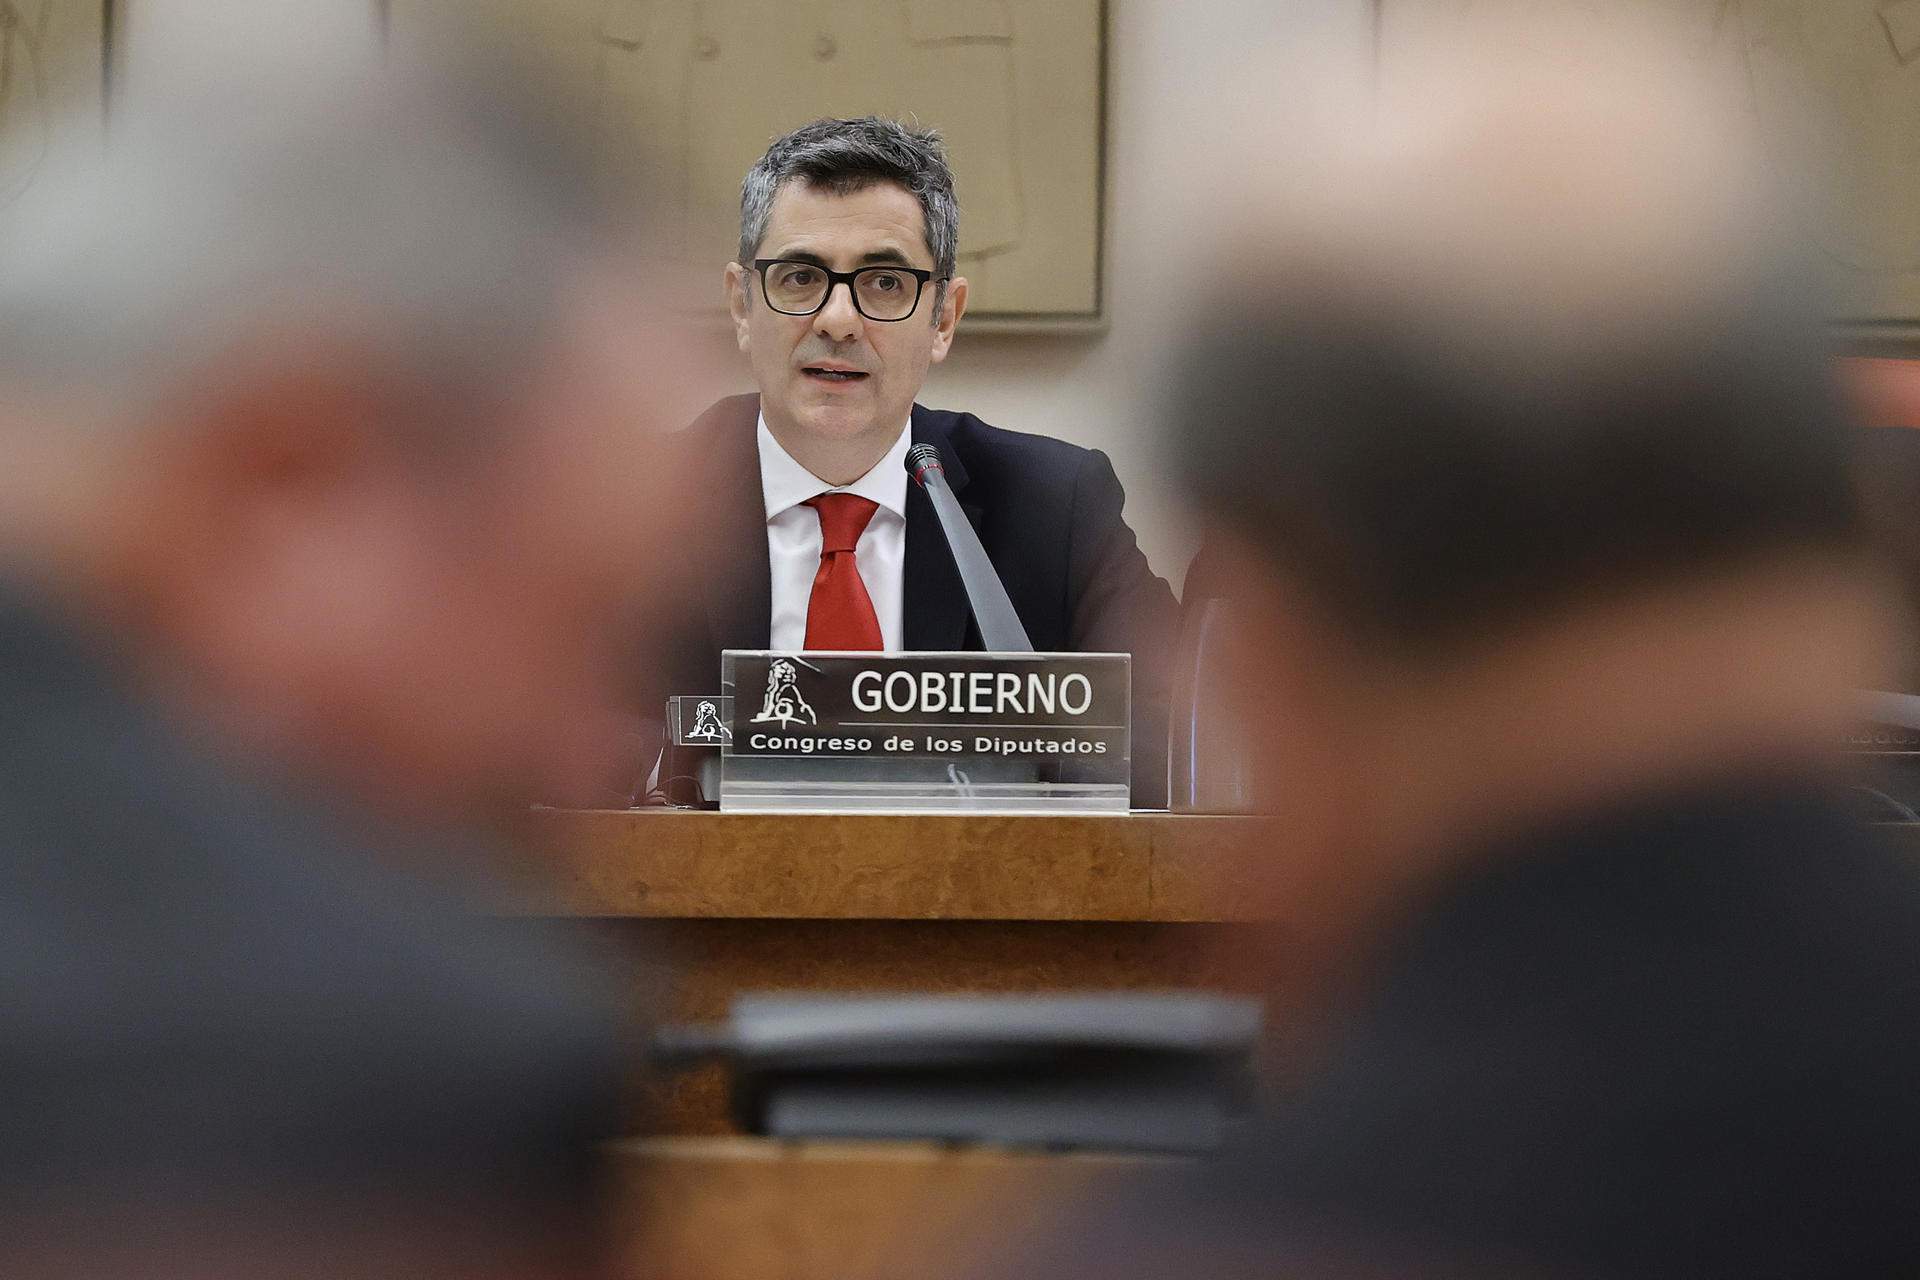 La Moncloa treu pit amb la Fiscalia del Suprem sobre Puigdemont: “No hi va haver terrorisme”